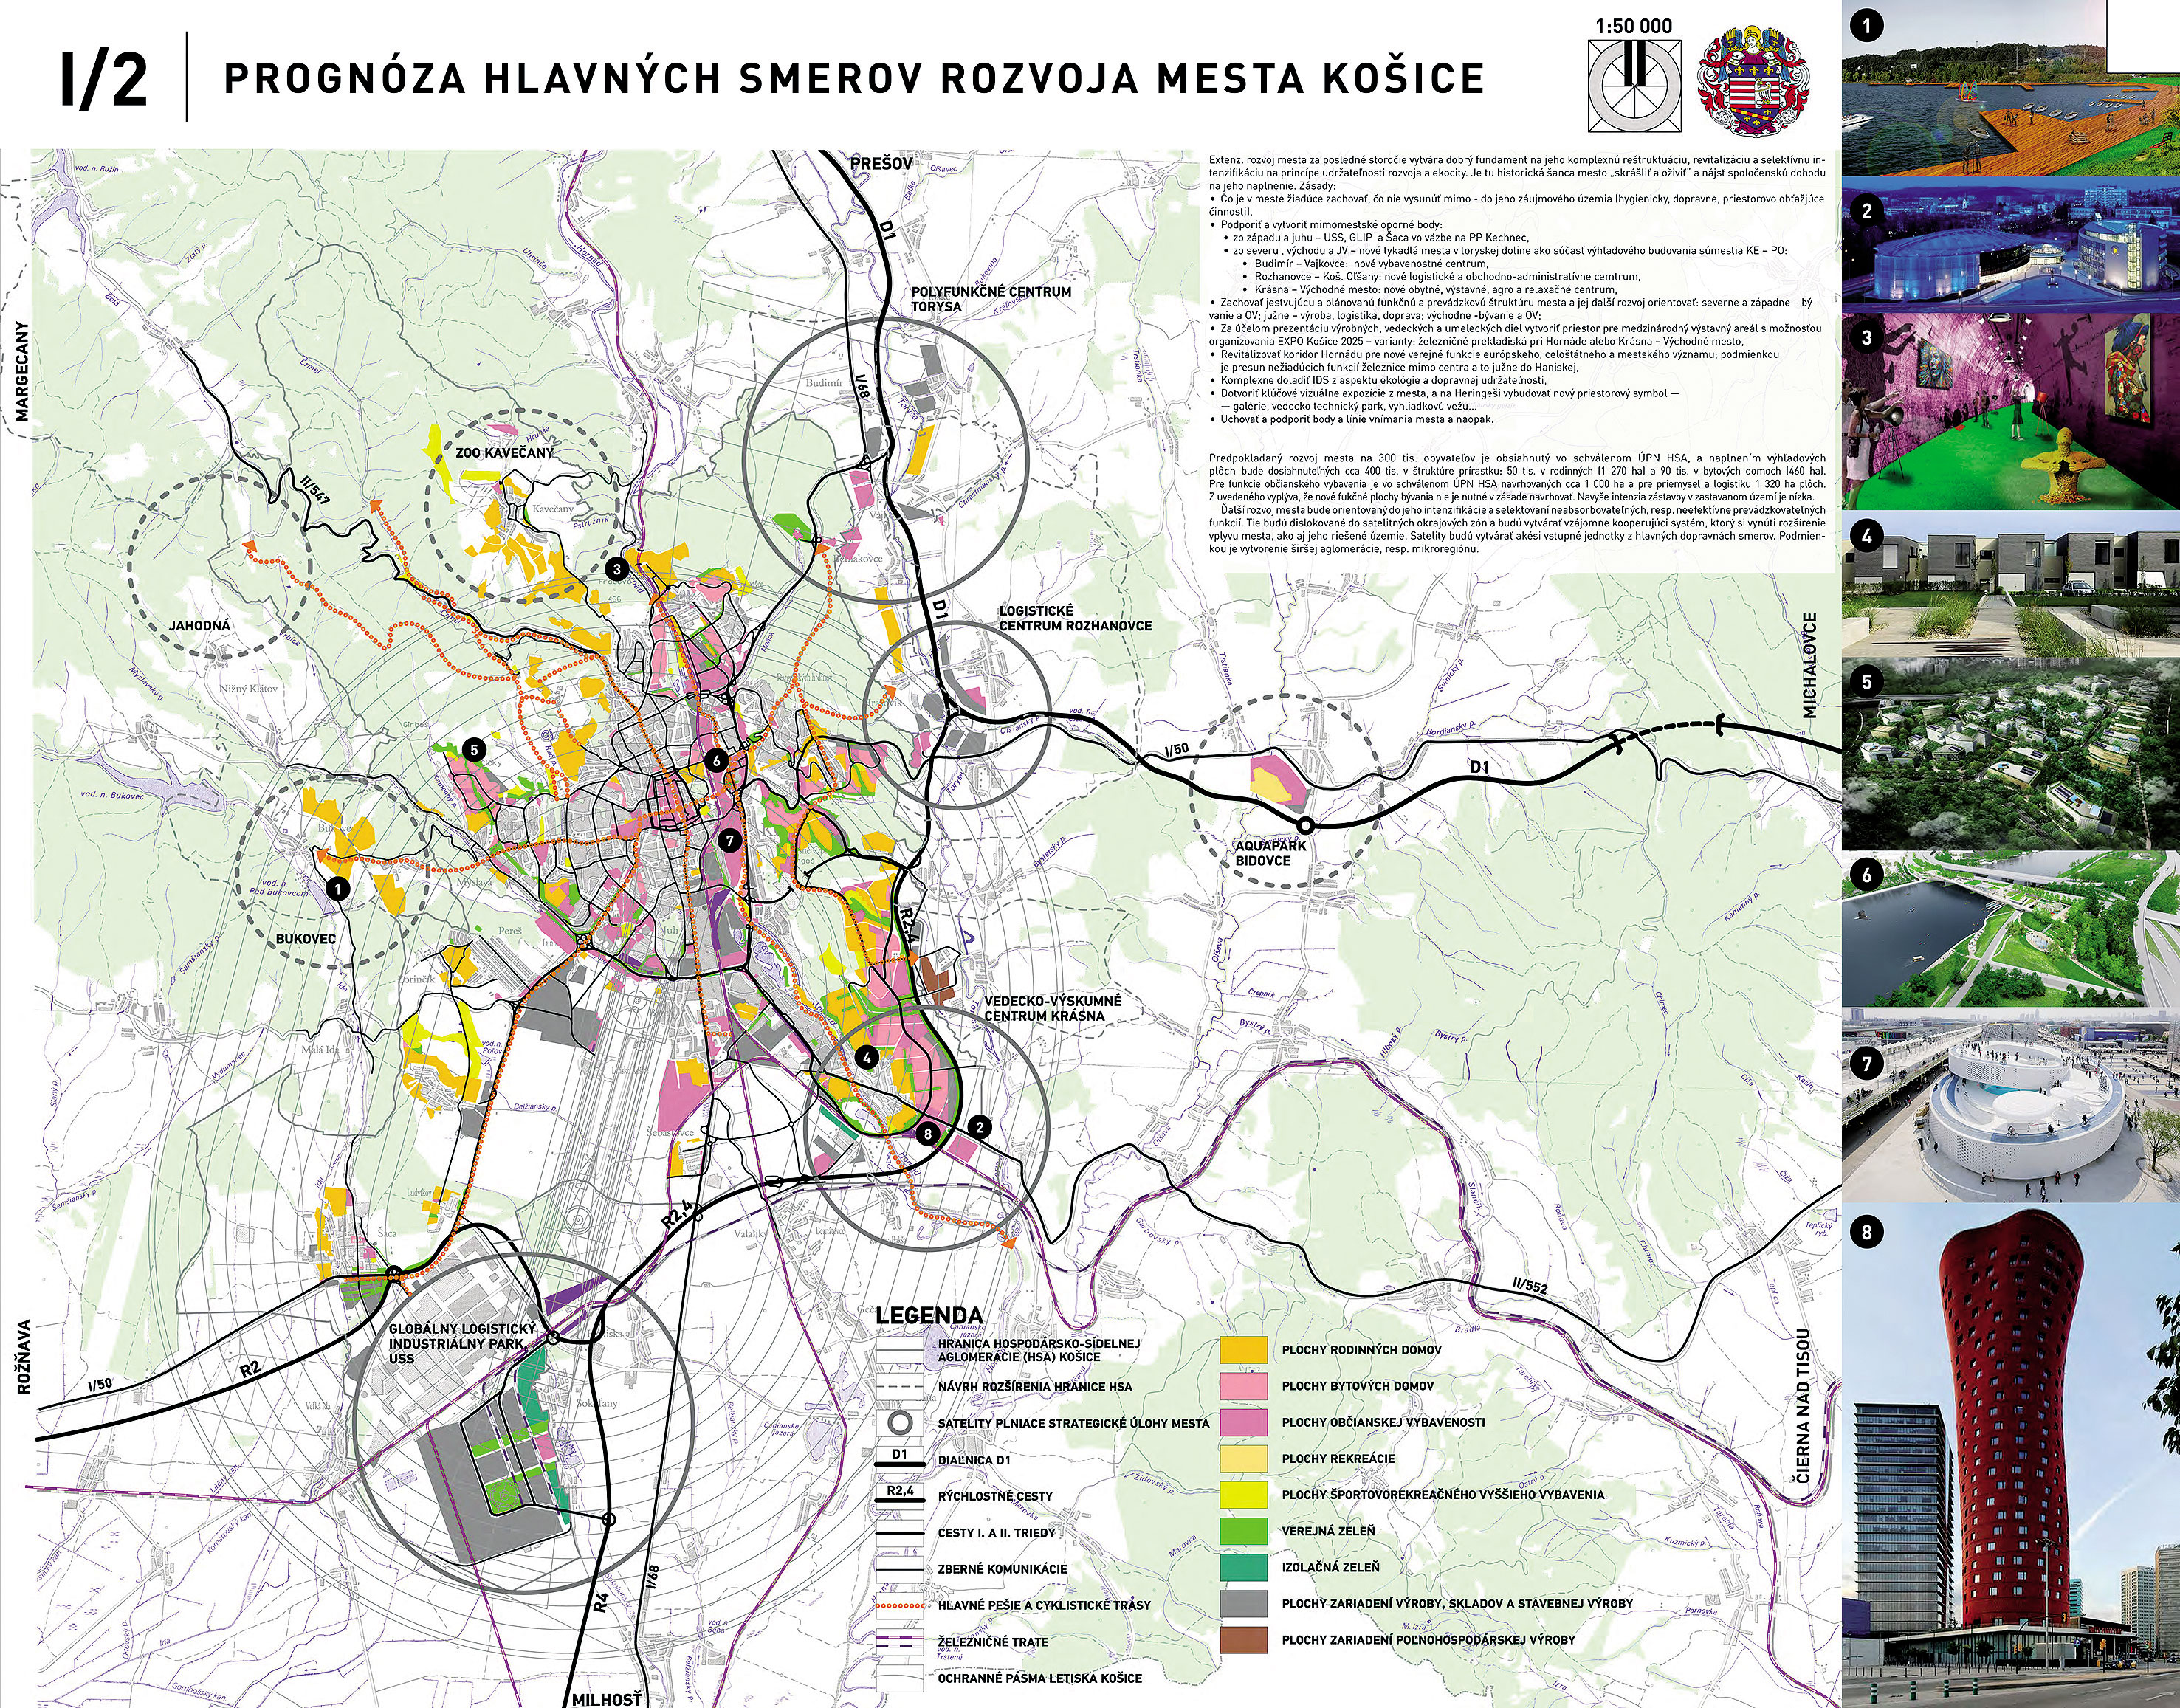 Odmenený návrh architektonického štúdia Atrium: prognóza hlavných smerov rozvoja mesta Košice s vizuálnymi ideami využitia priestorov